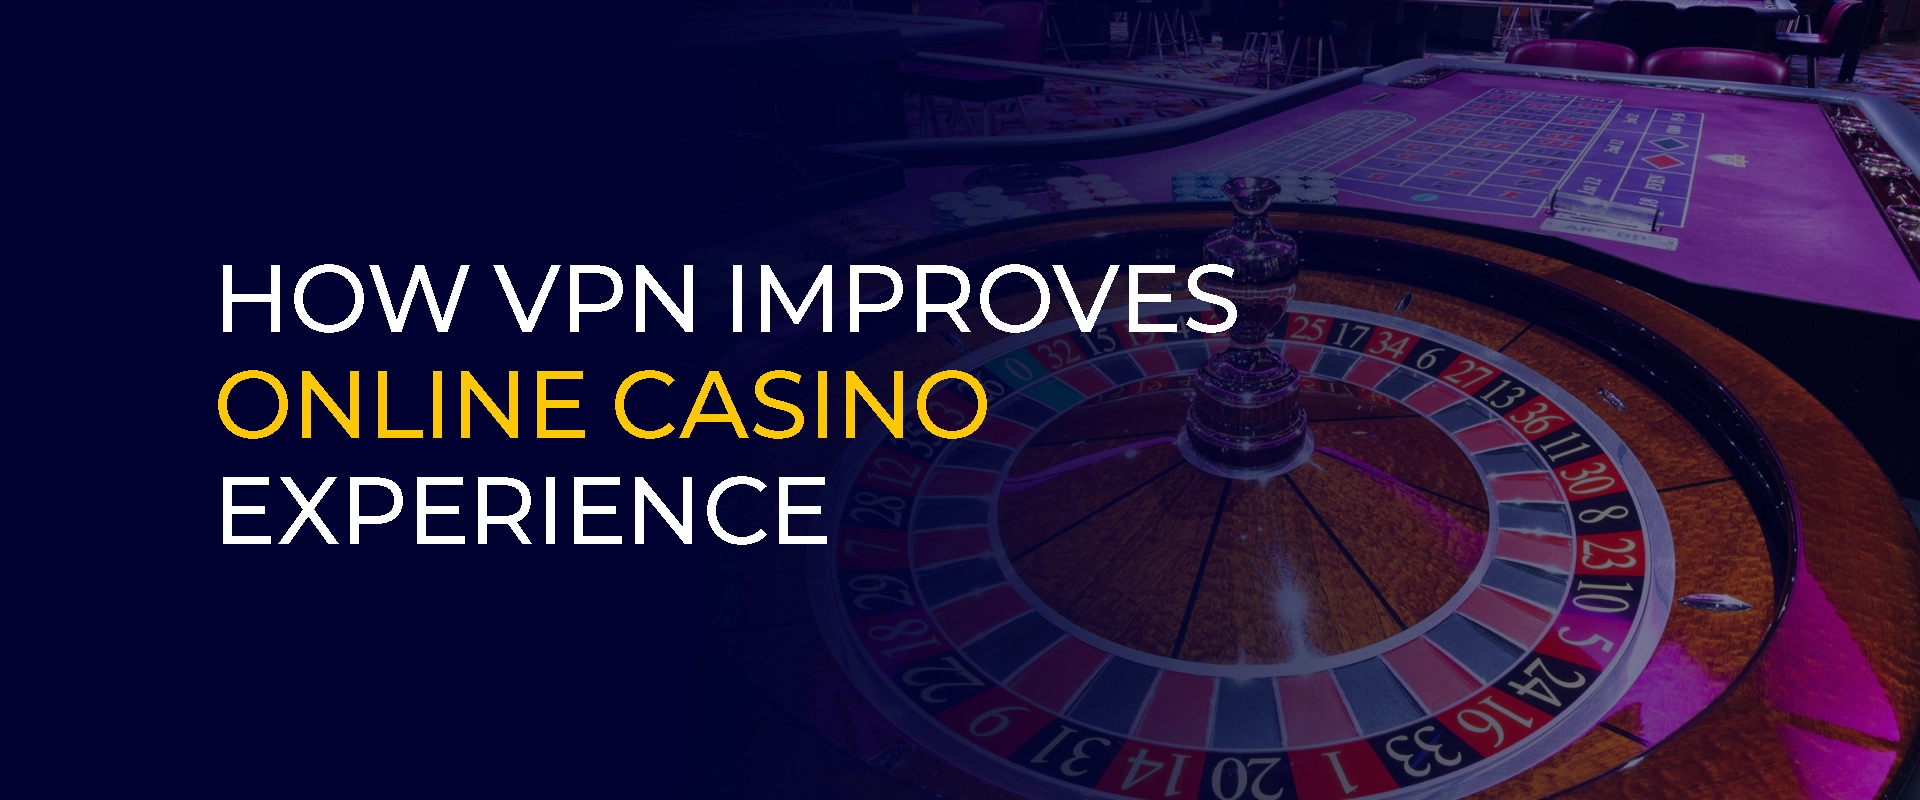 Wéi VPN verbessert Online Casino Erfahrung